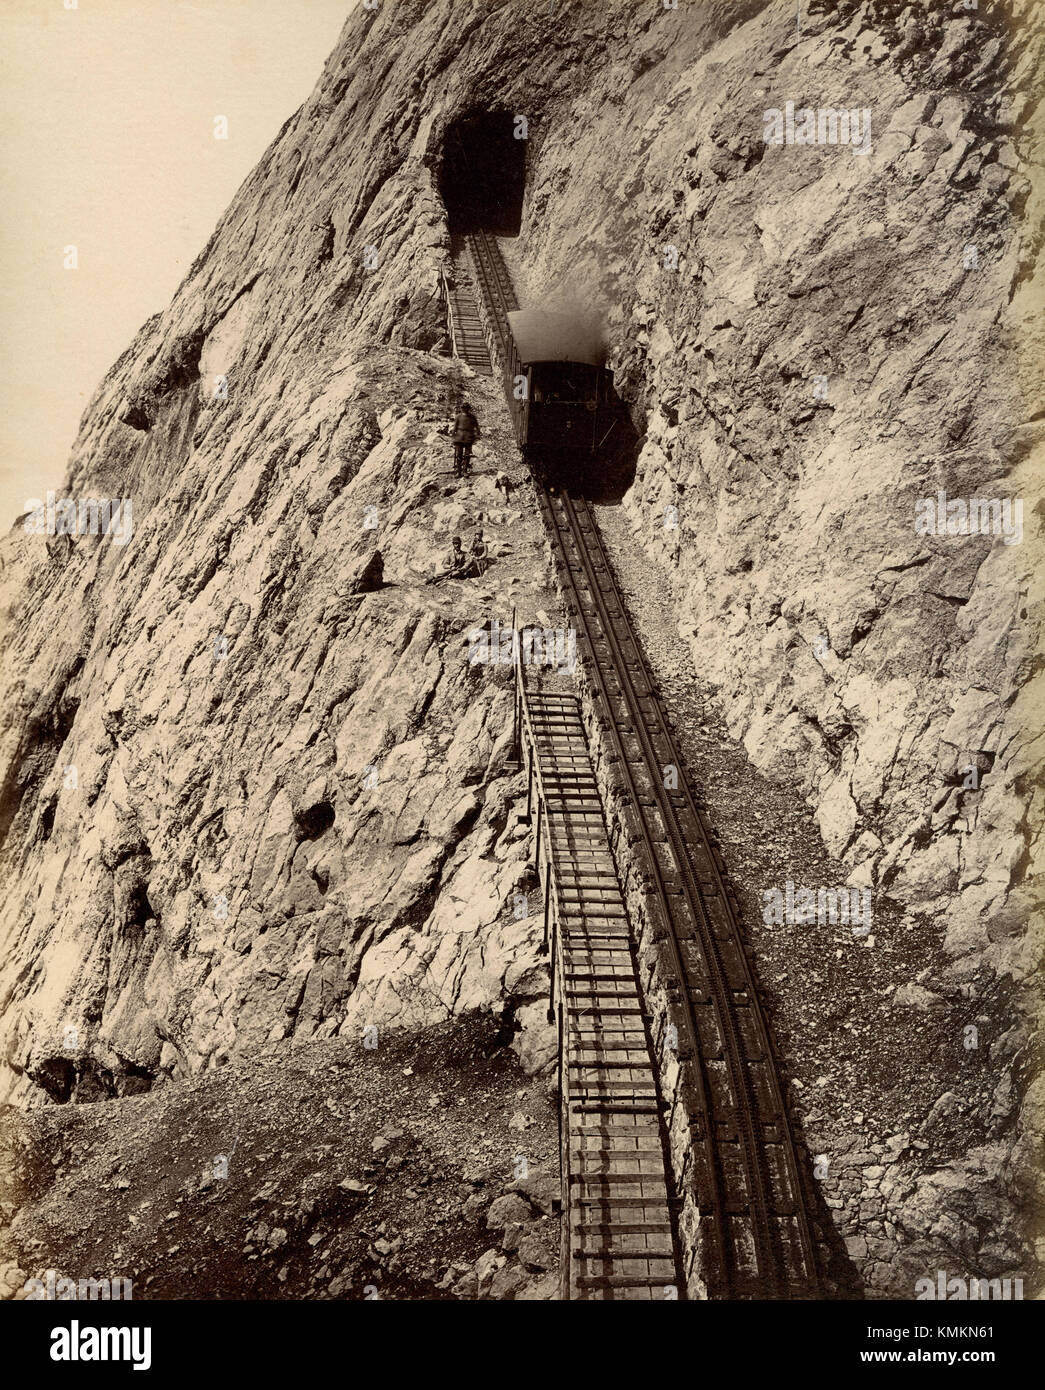 Pilatus railway, Switzerland 1880s Stock Photo